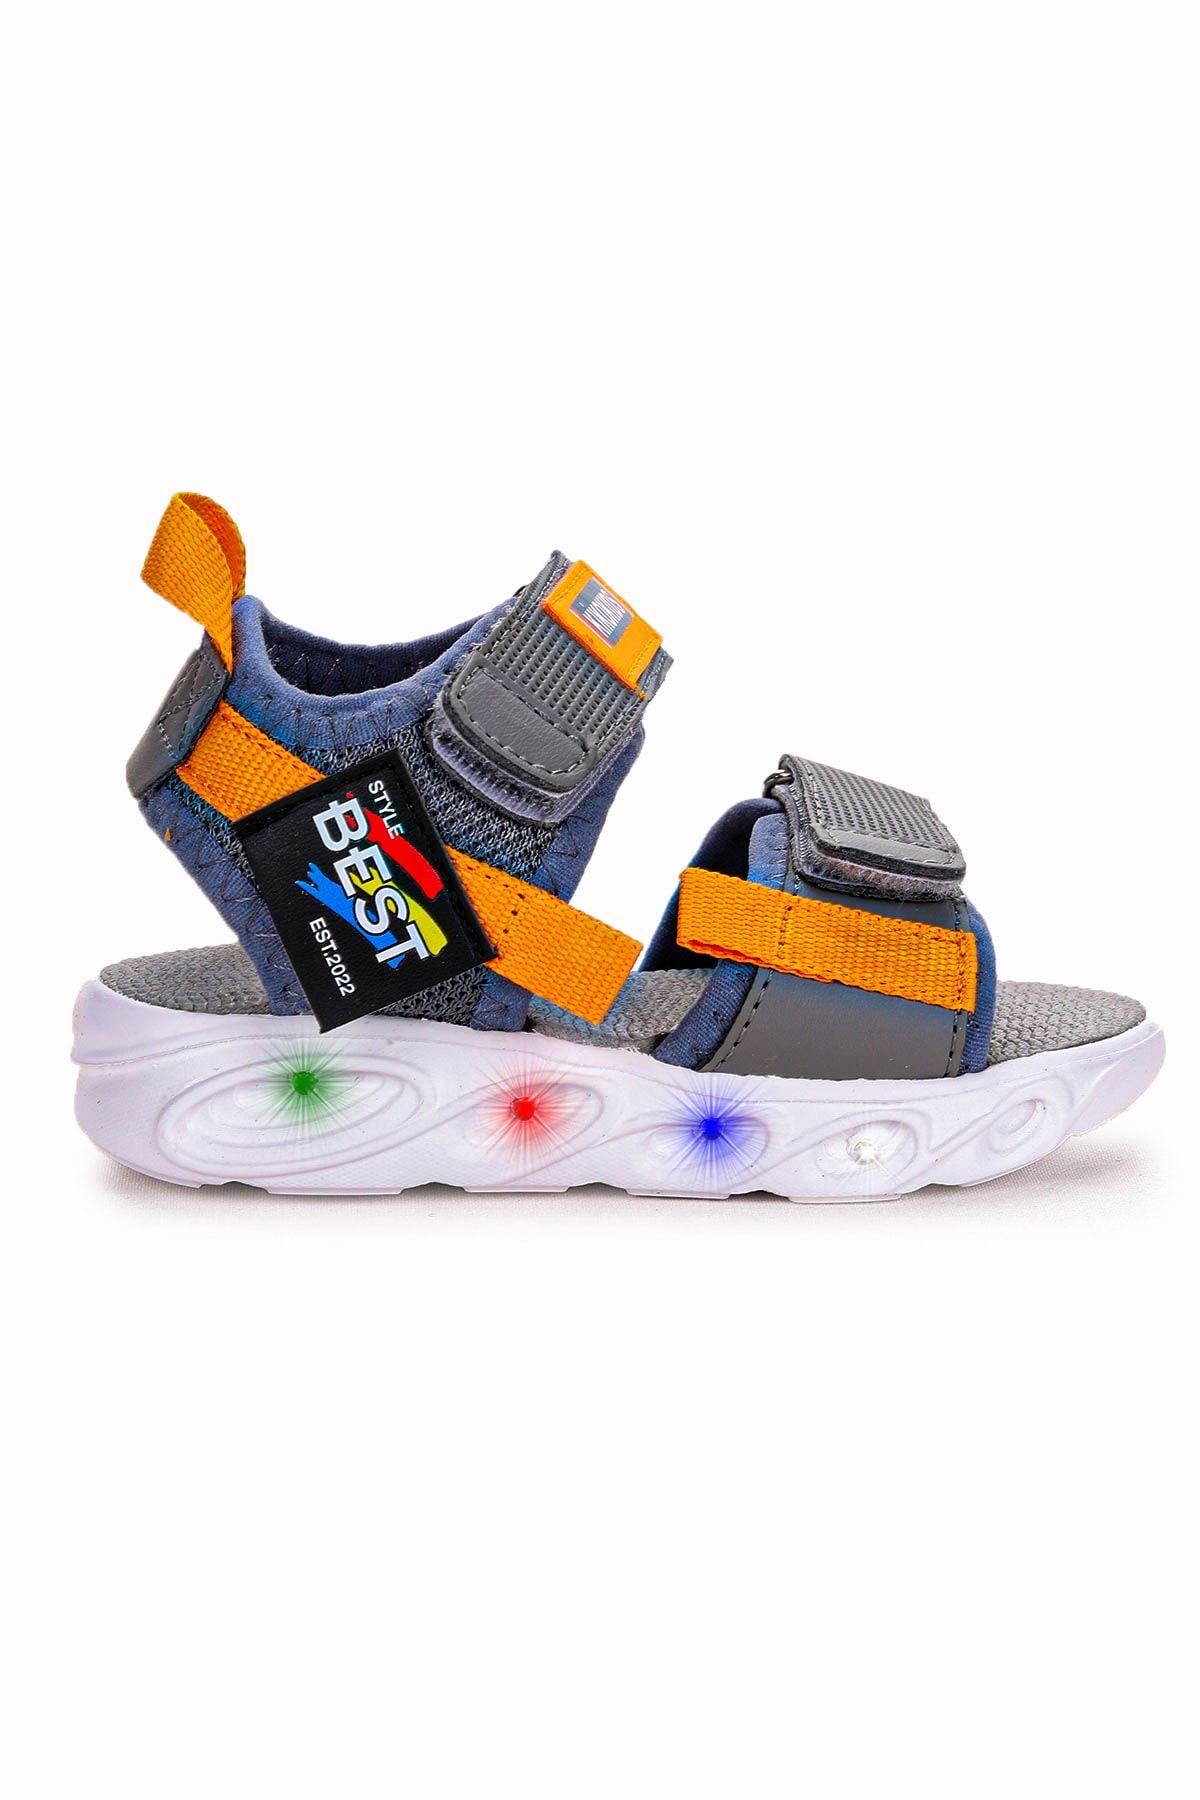 Kiko Kids 100 Işıklı Günlük Kız/erkek Çocuk Cırtlı Sandalet Ayakkabı